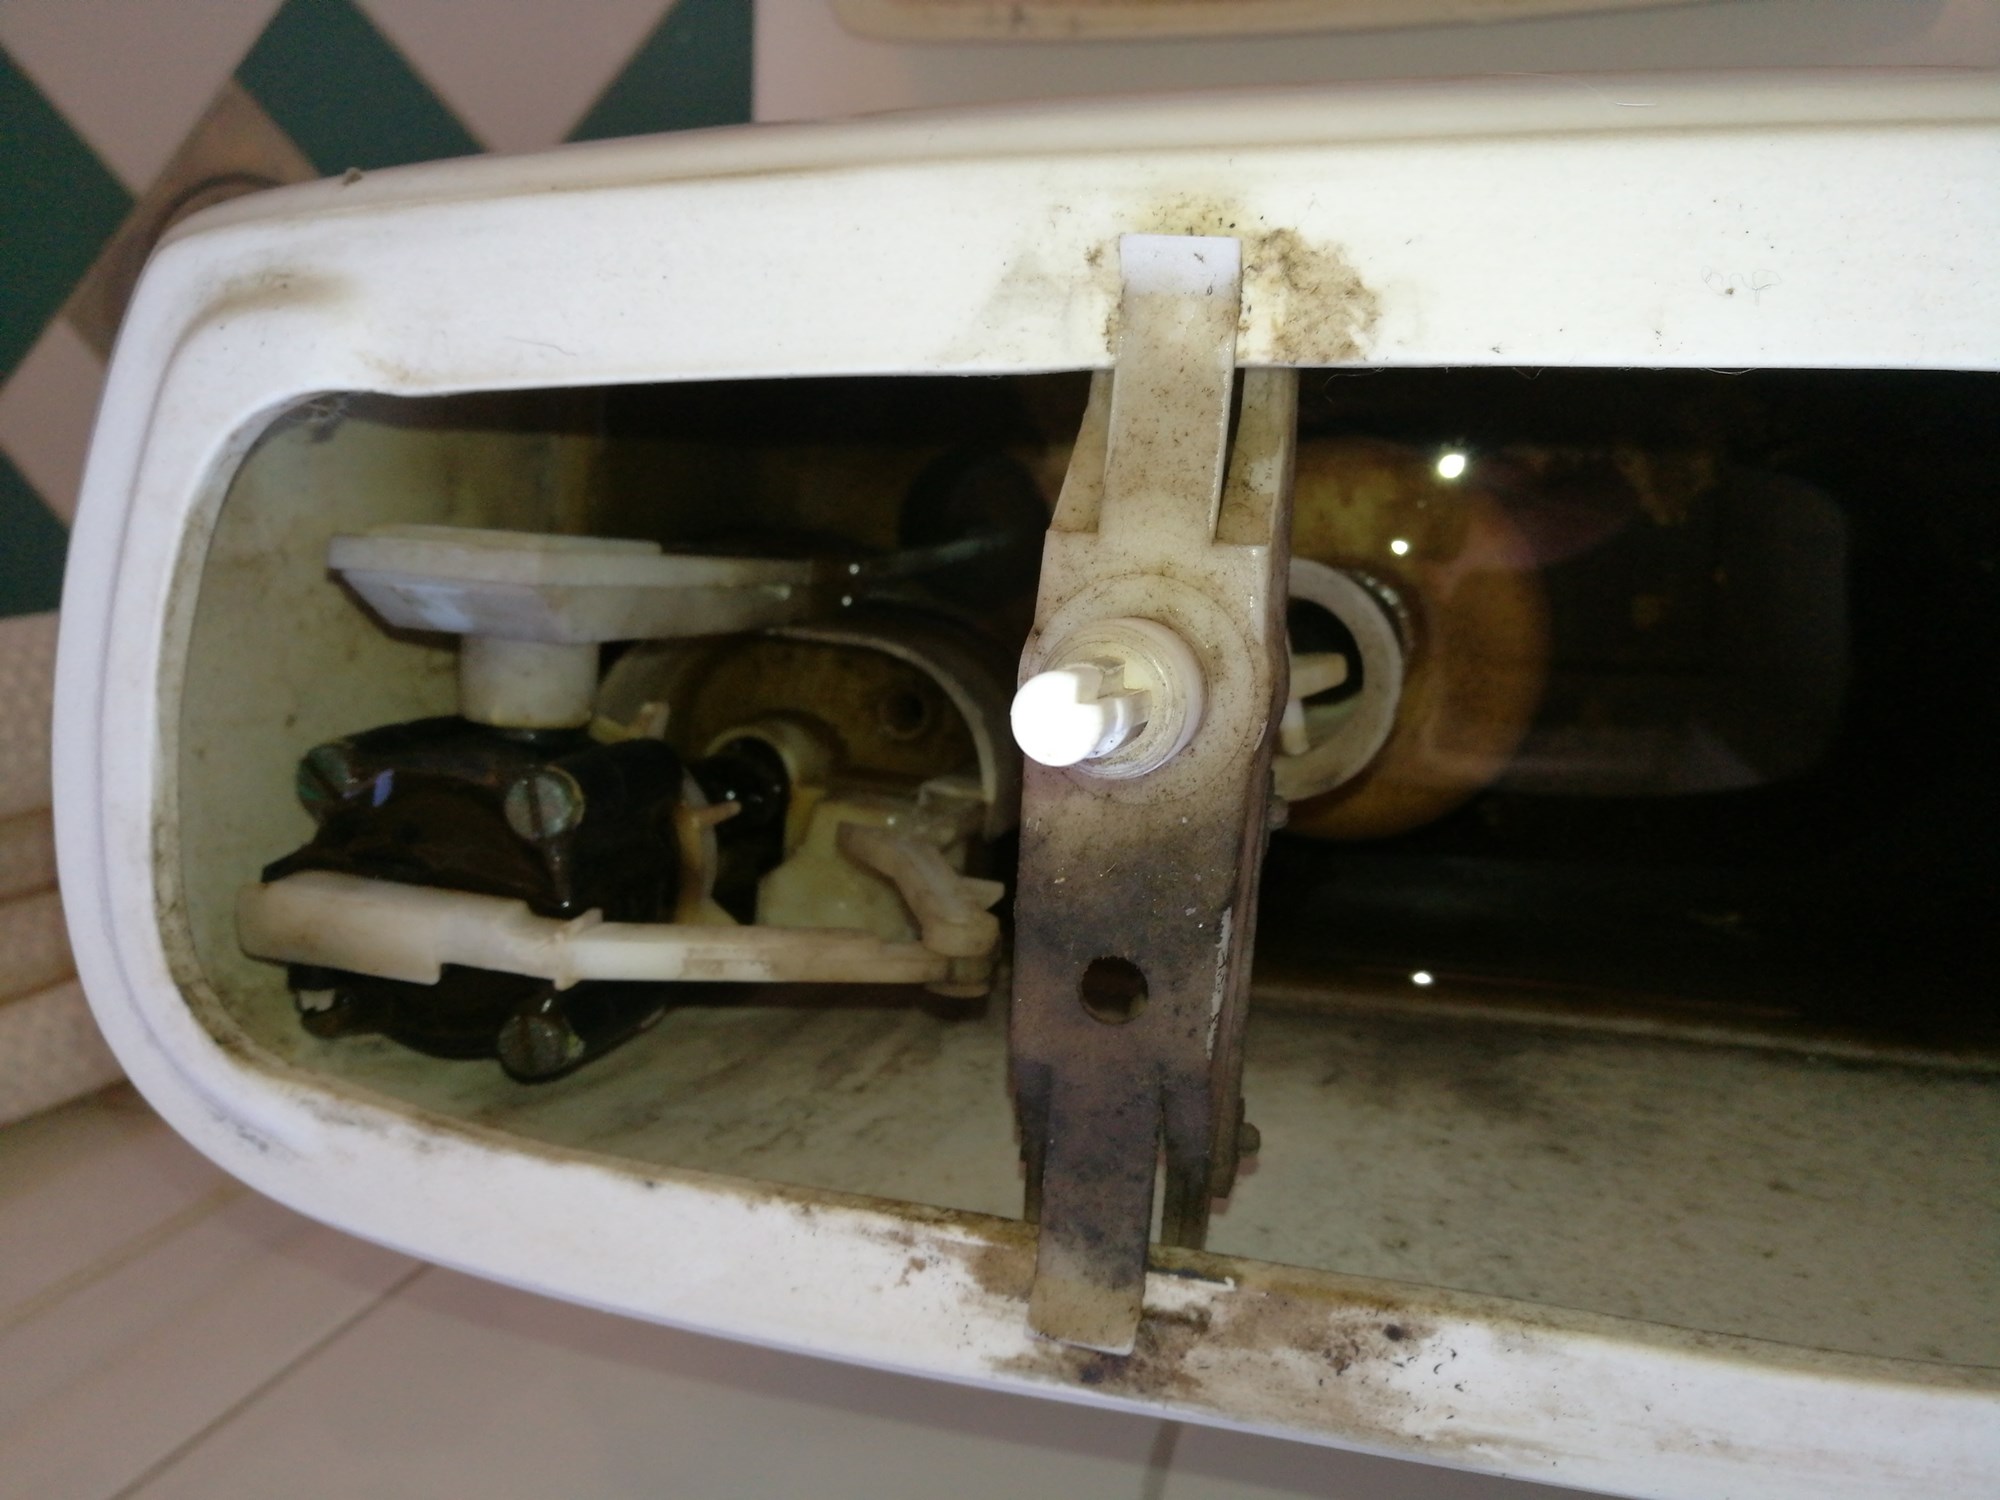 Eldre porsgrund toalett flusher dårlig og fyller seg sakte - 15165281149611468030633.jpg - Provolone